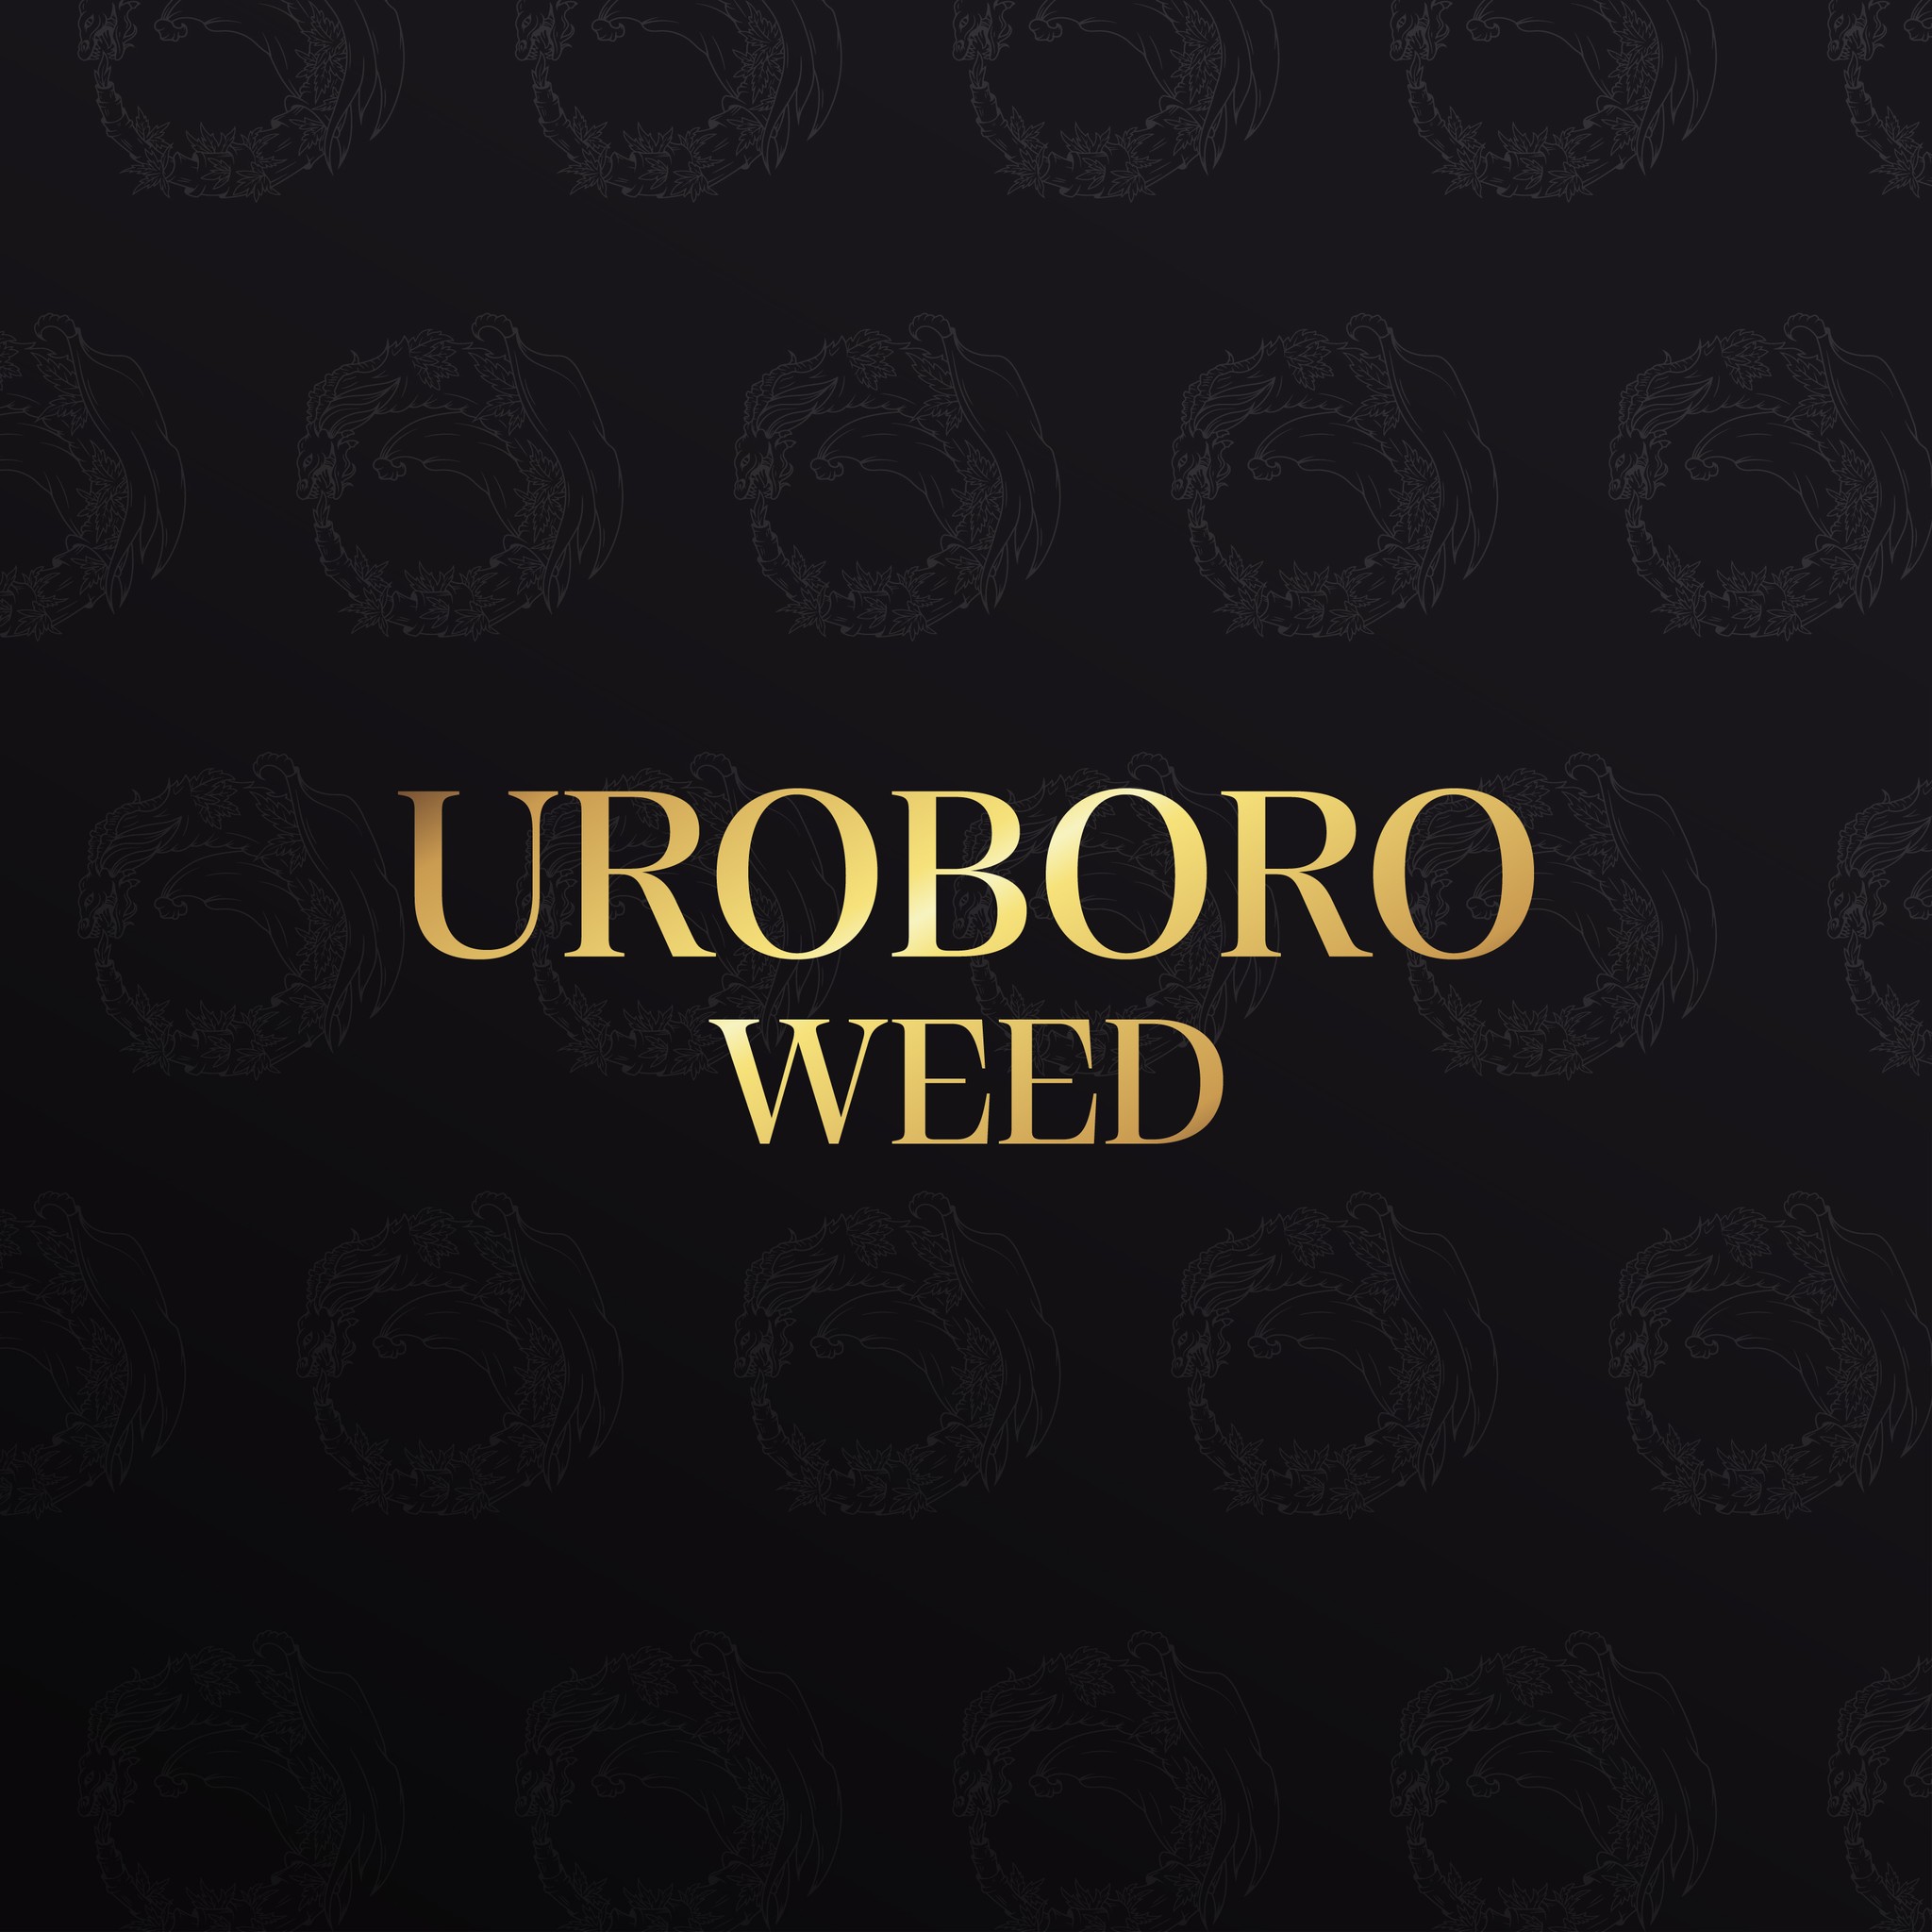 Uroboro Weed